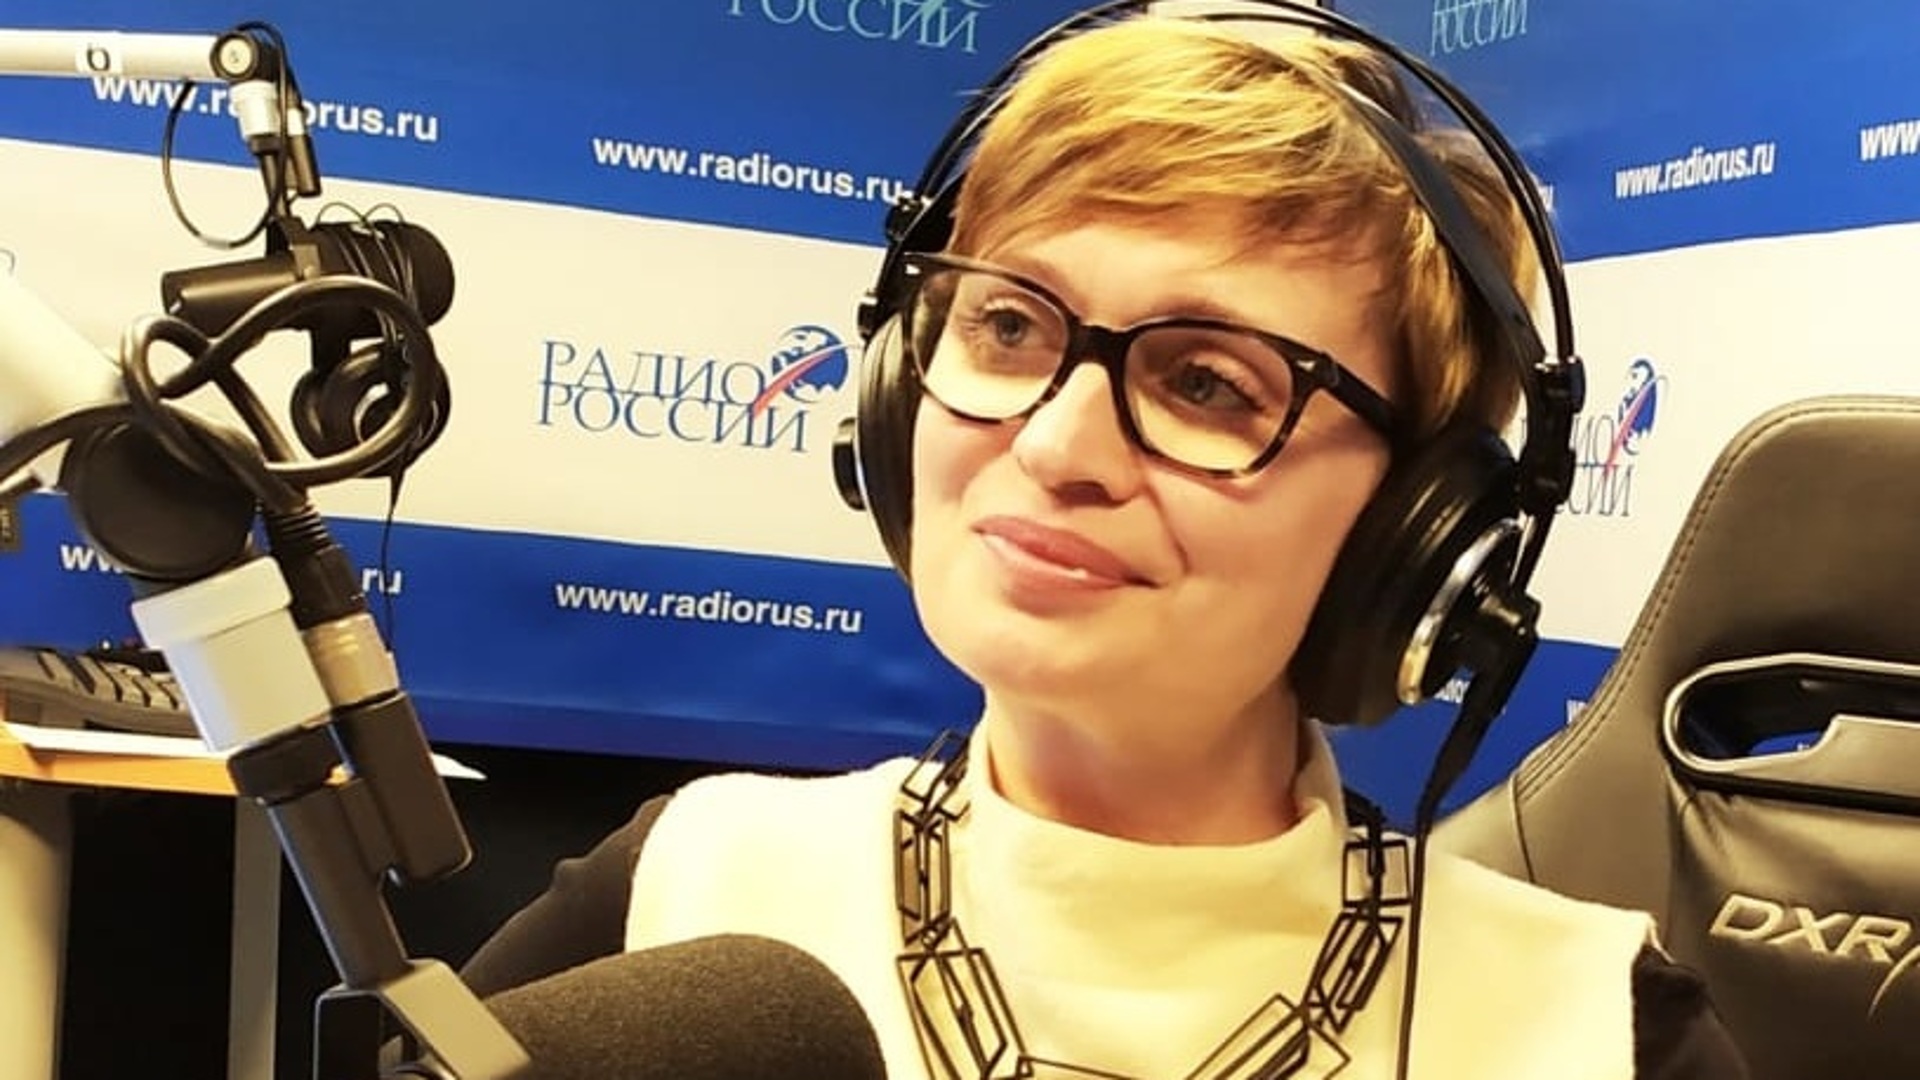 Ведущие радио России Алла Волохина и Вячеслав Коновалов